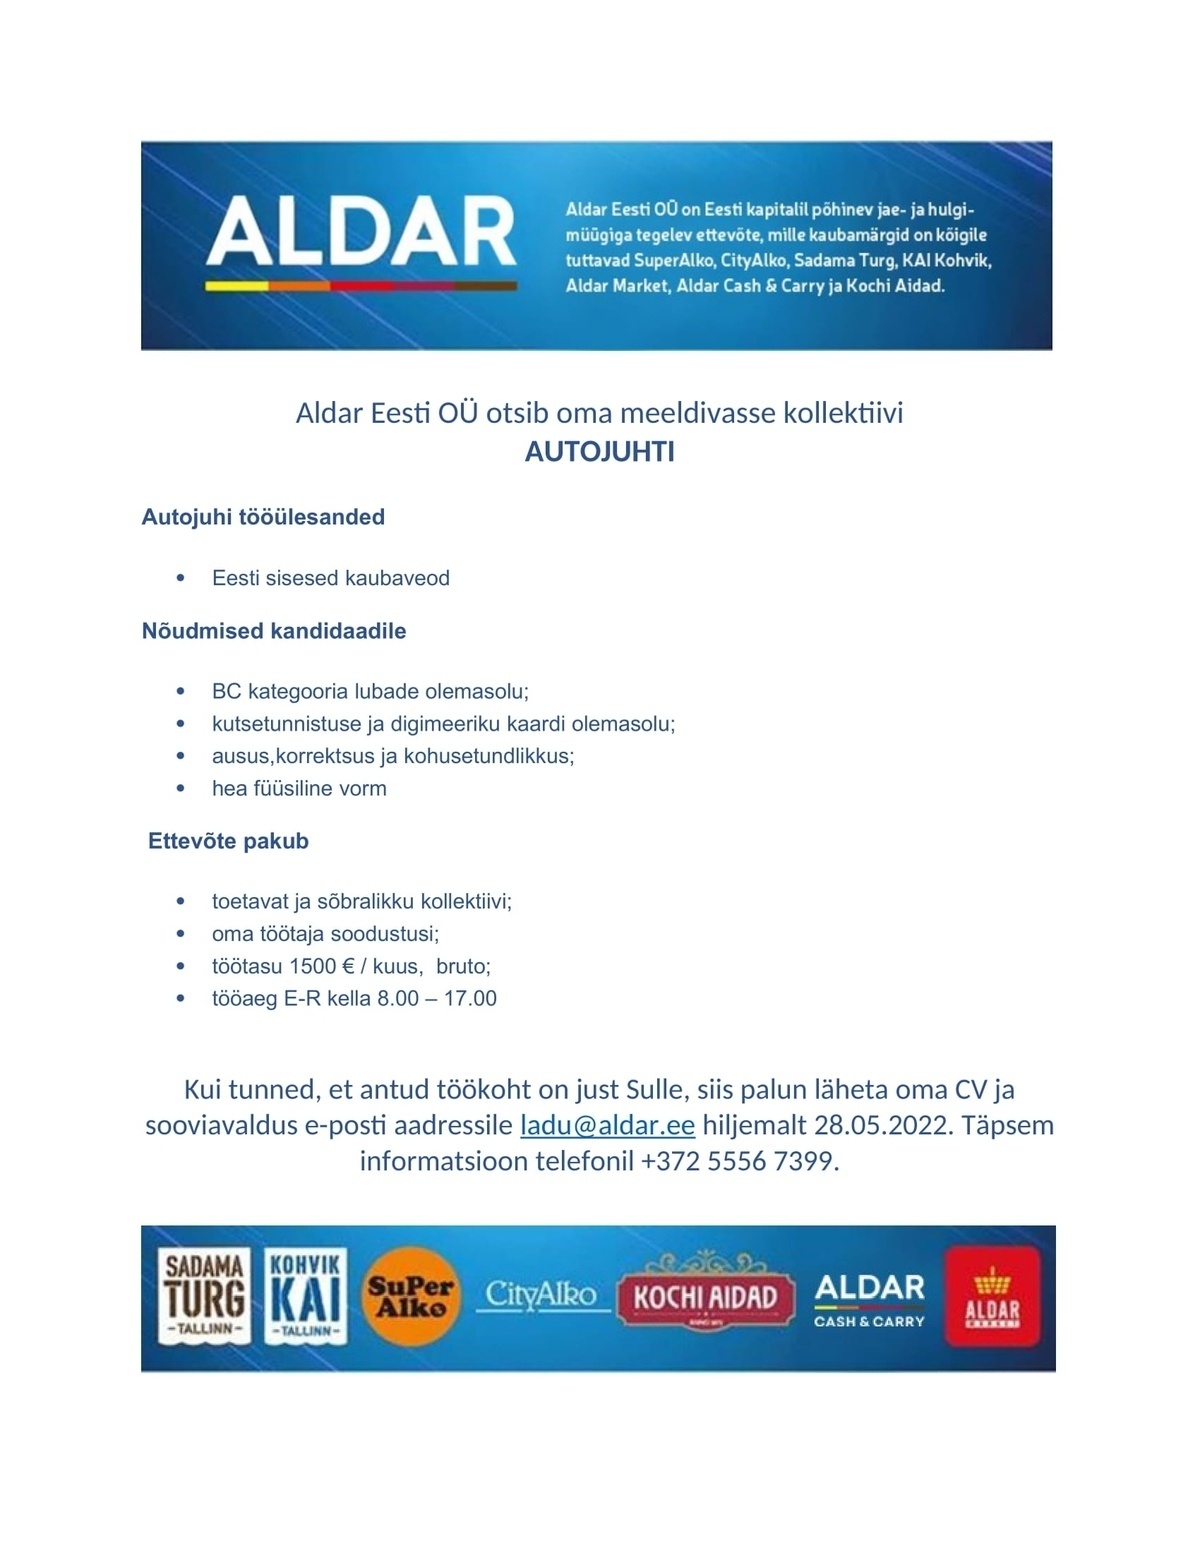 Aldar Eesti OÜ Autojuht-C&C Aldar